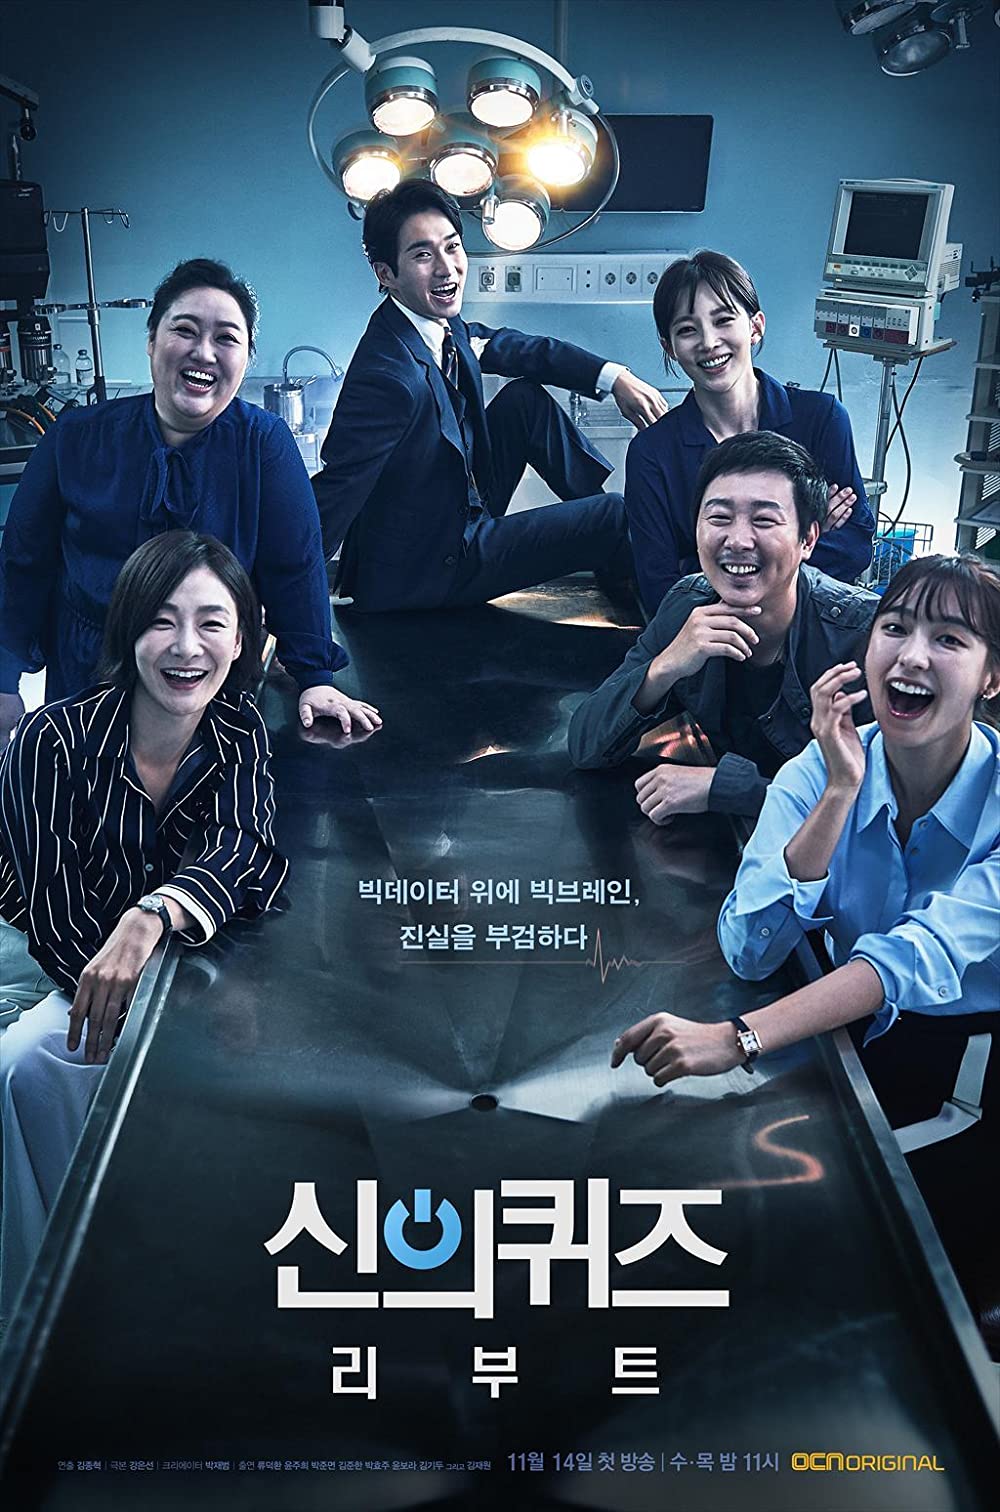 harper bazaar phim dieu tra phap y han quoc 1 - Top 8 bộ phim hình sự điều tra pháp y Hàn Quốc đáng xem nhất